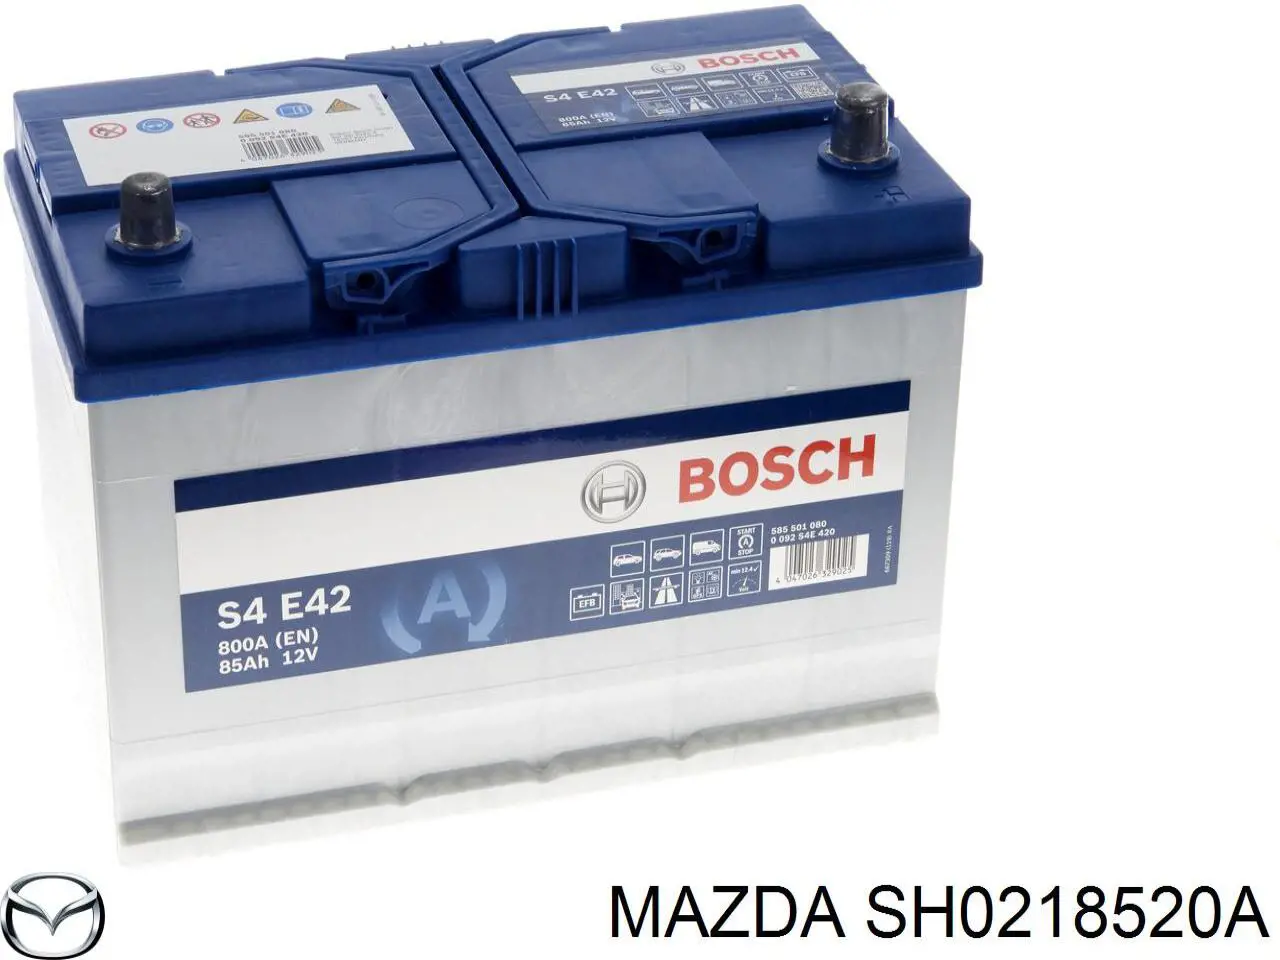 SH0218520A Mazda bateria recarregável (pilha)